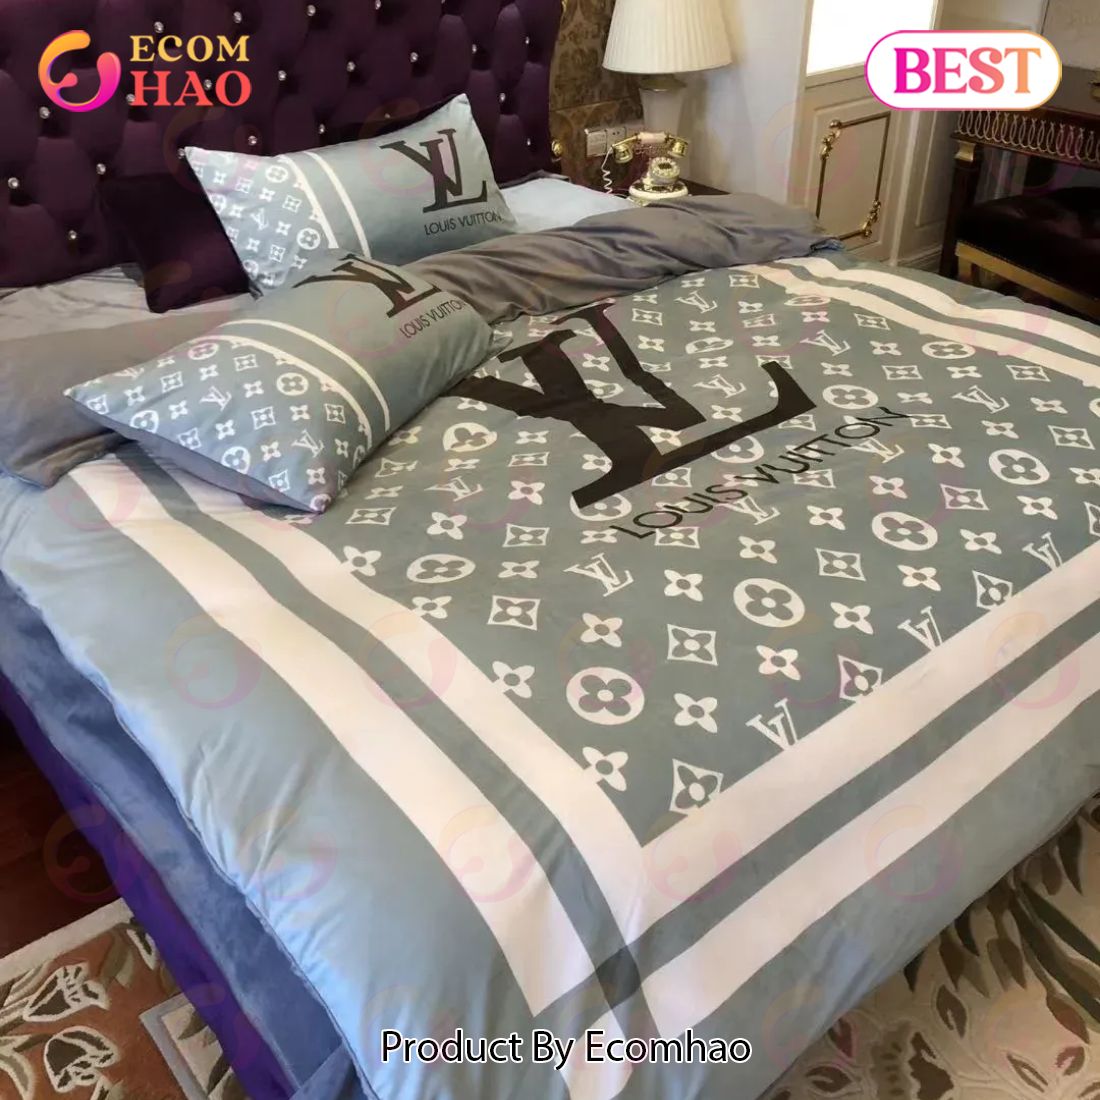 Blue Monogram Louis Vuitton Bedding Sets Luxury Brand Bed Sets Bedroom Sets Comforter Sets Duvet Cover Bedspread For Home Dcor Trending 2023 For Home